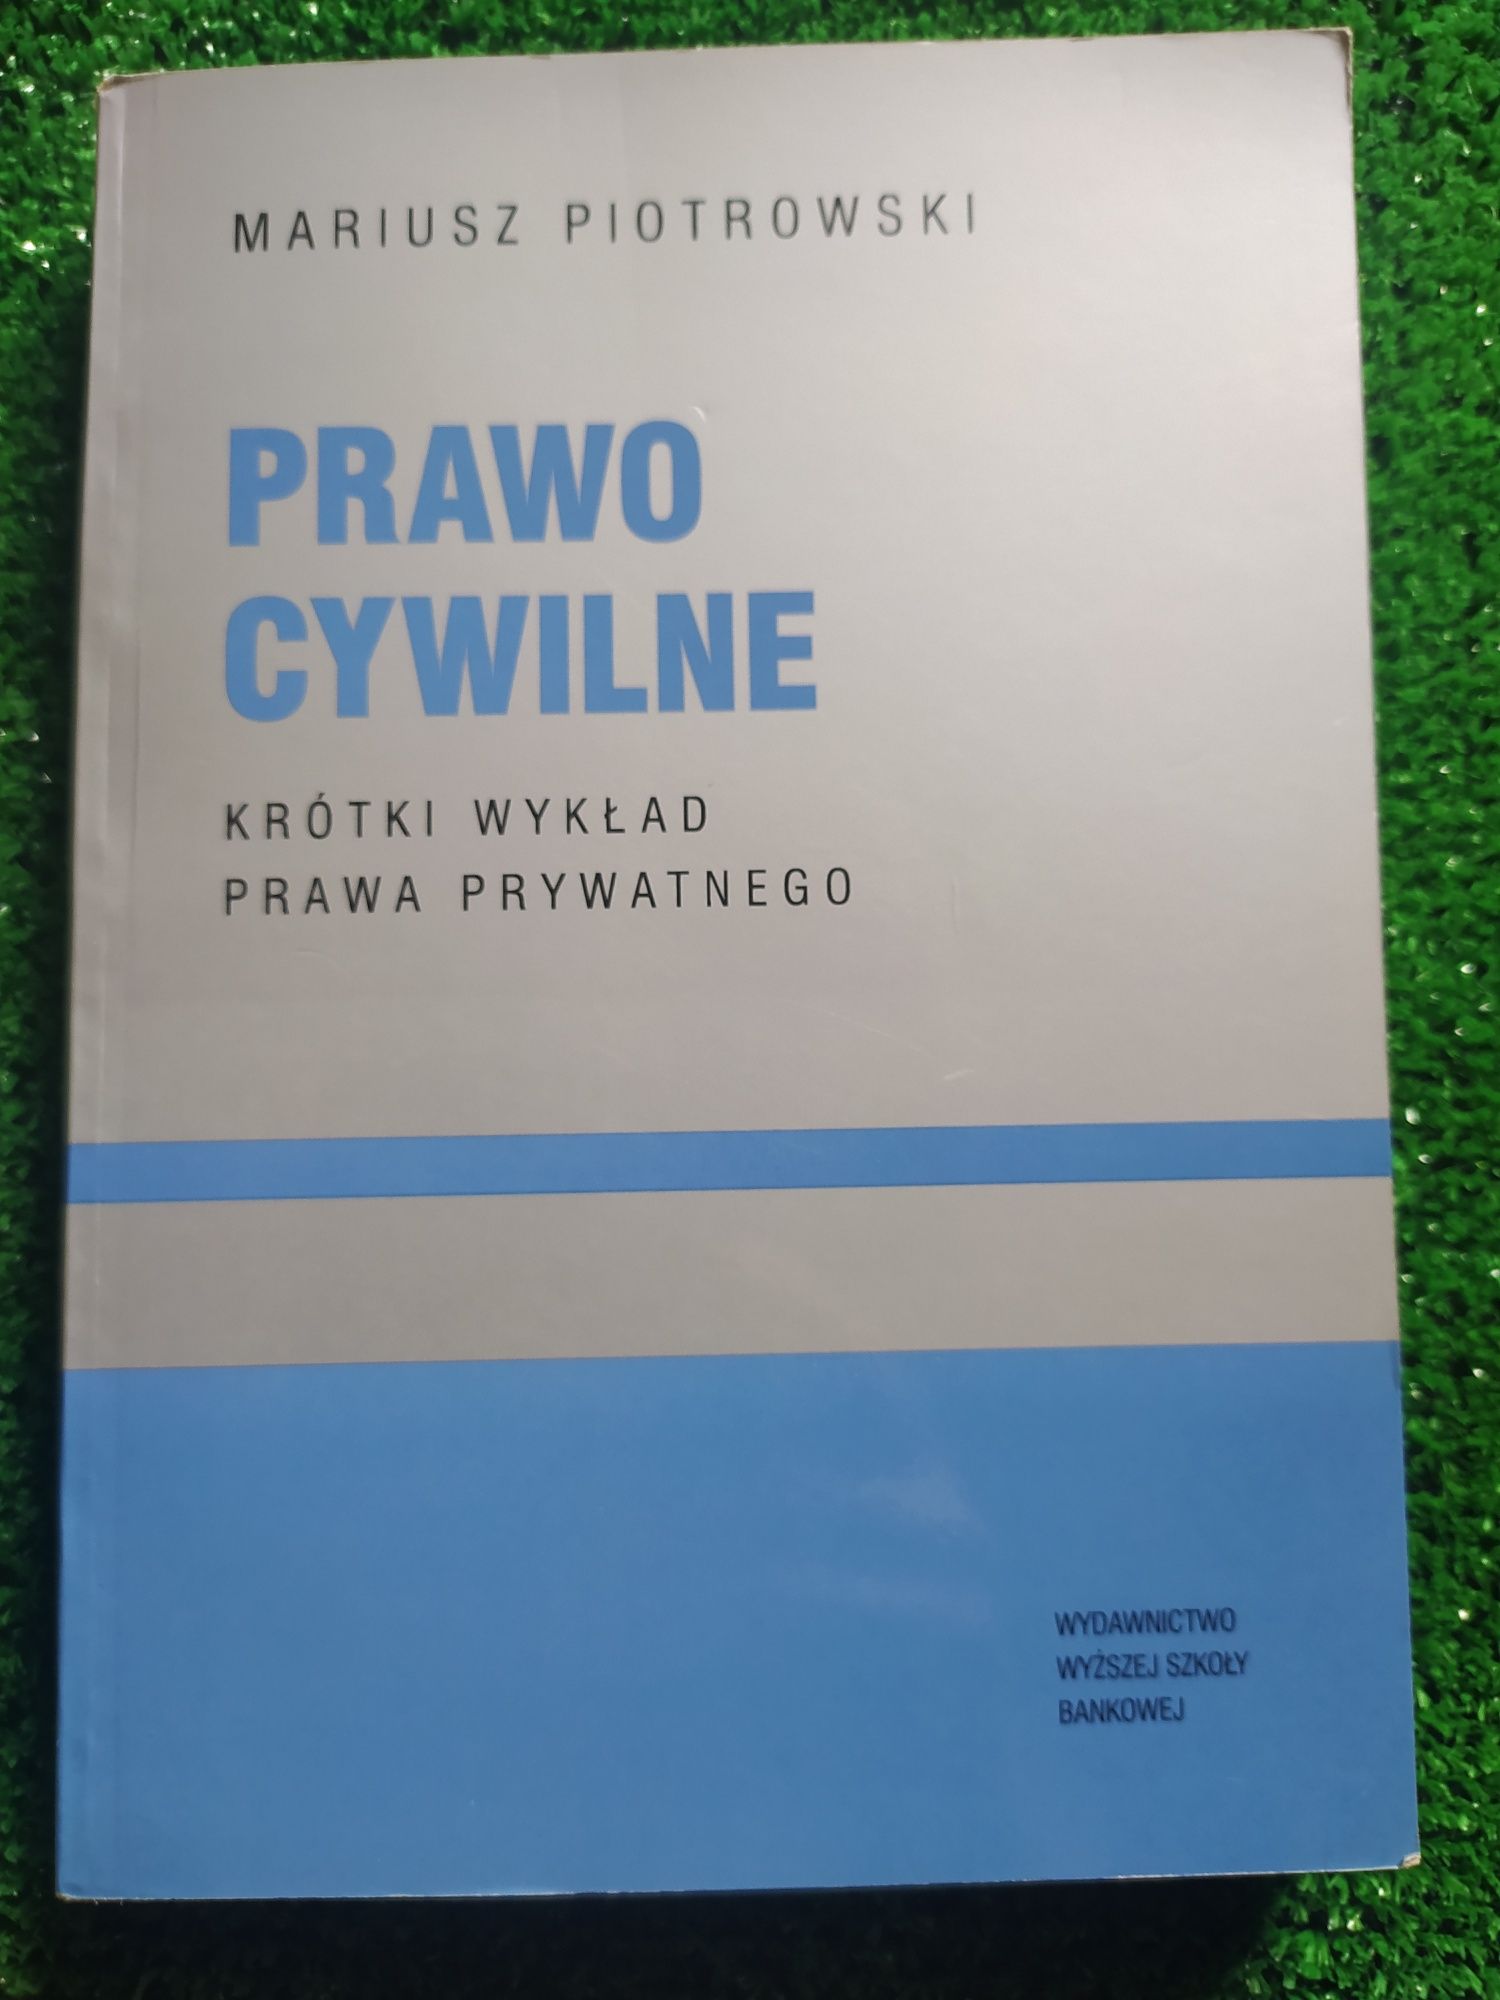 Podręcznik "Prawo cywilne" Mariusz Piotrowski